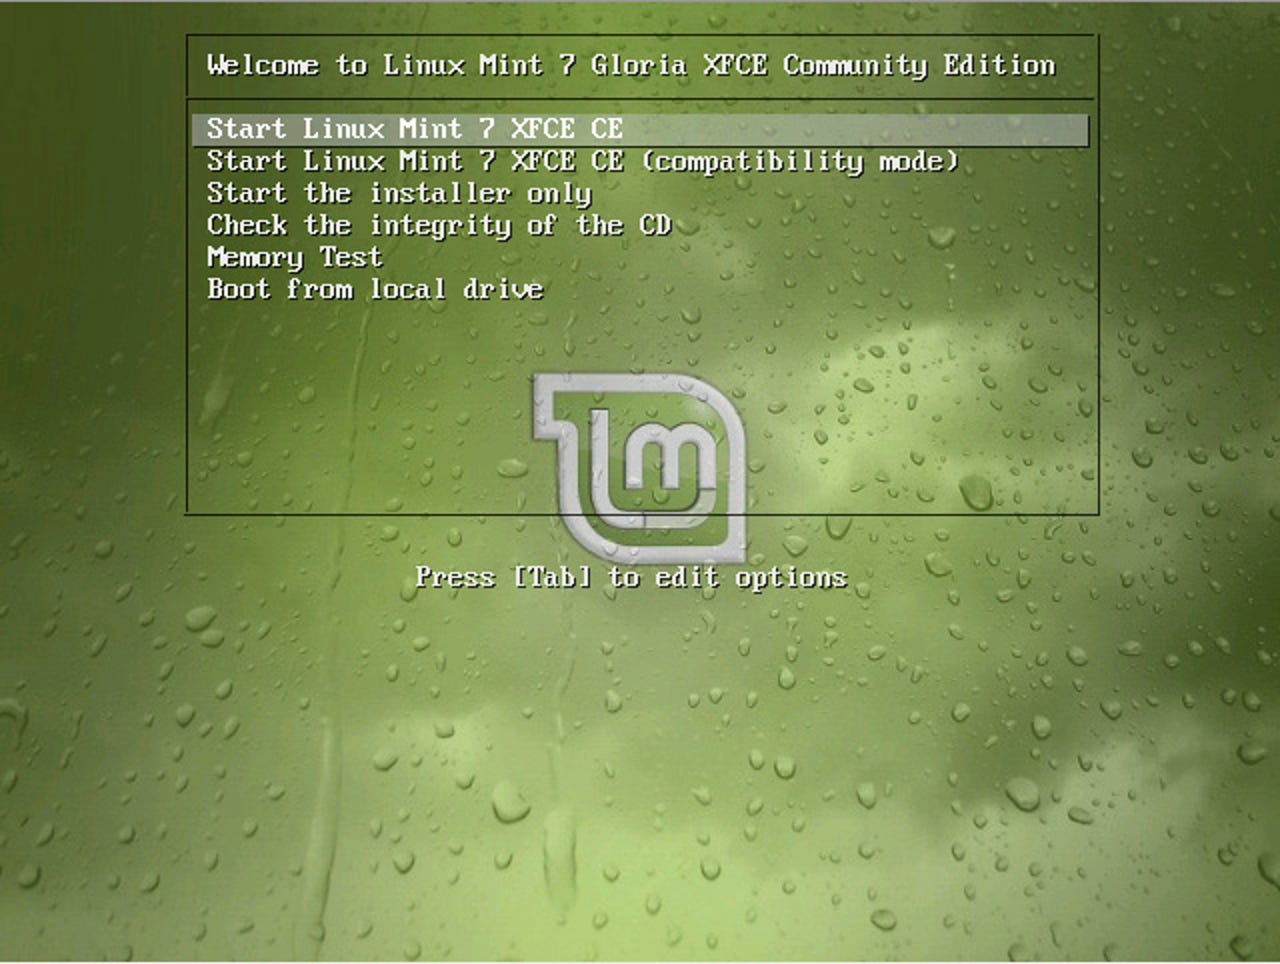 linux-mint-7-xfce1.jpg